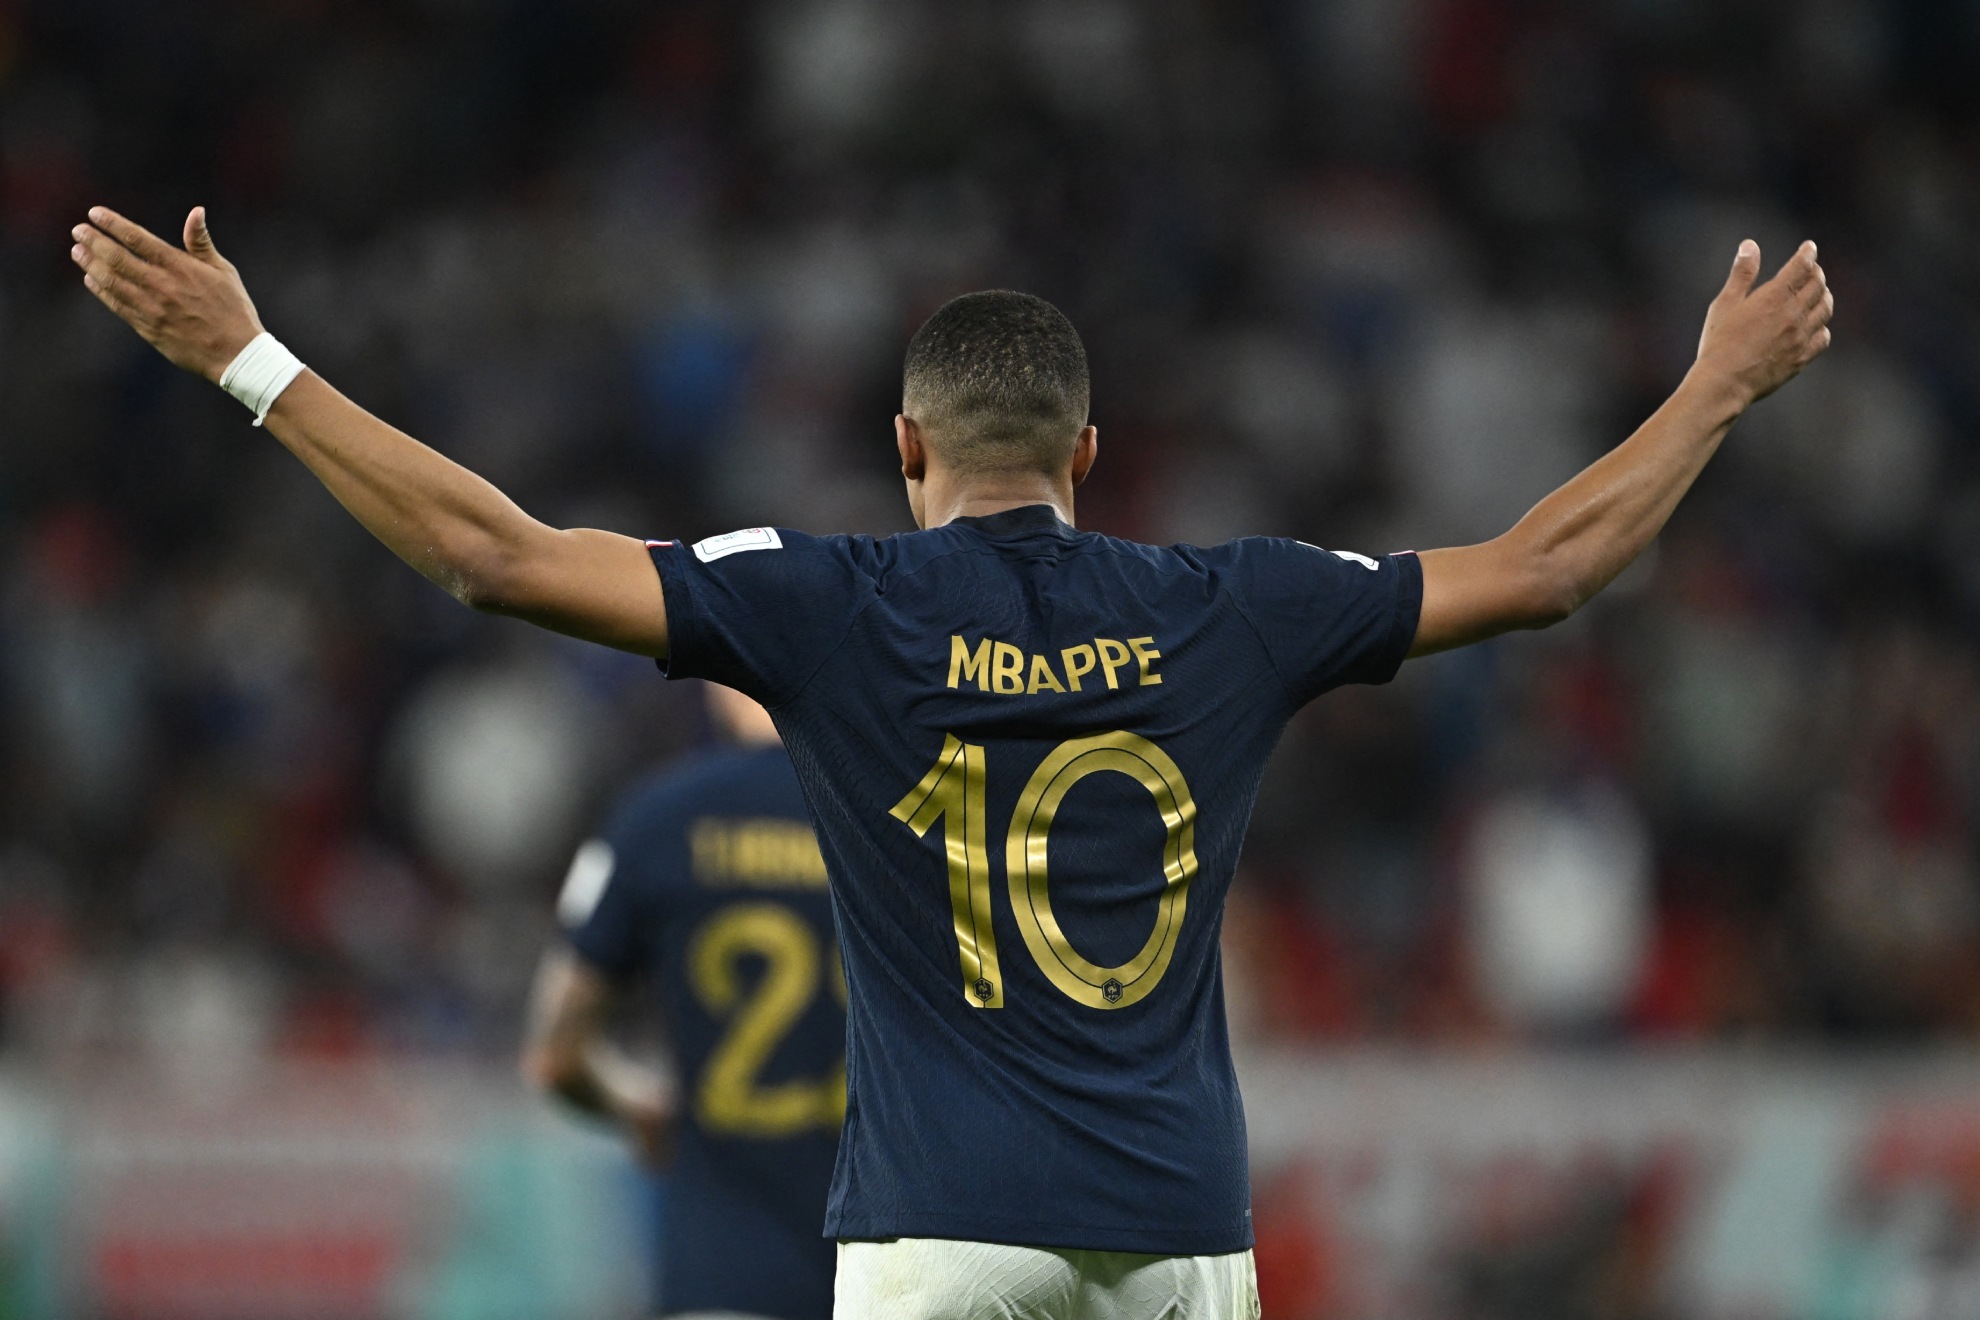 mbappe anota un doblete y llega a 9 goles en los mundiales